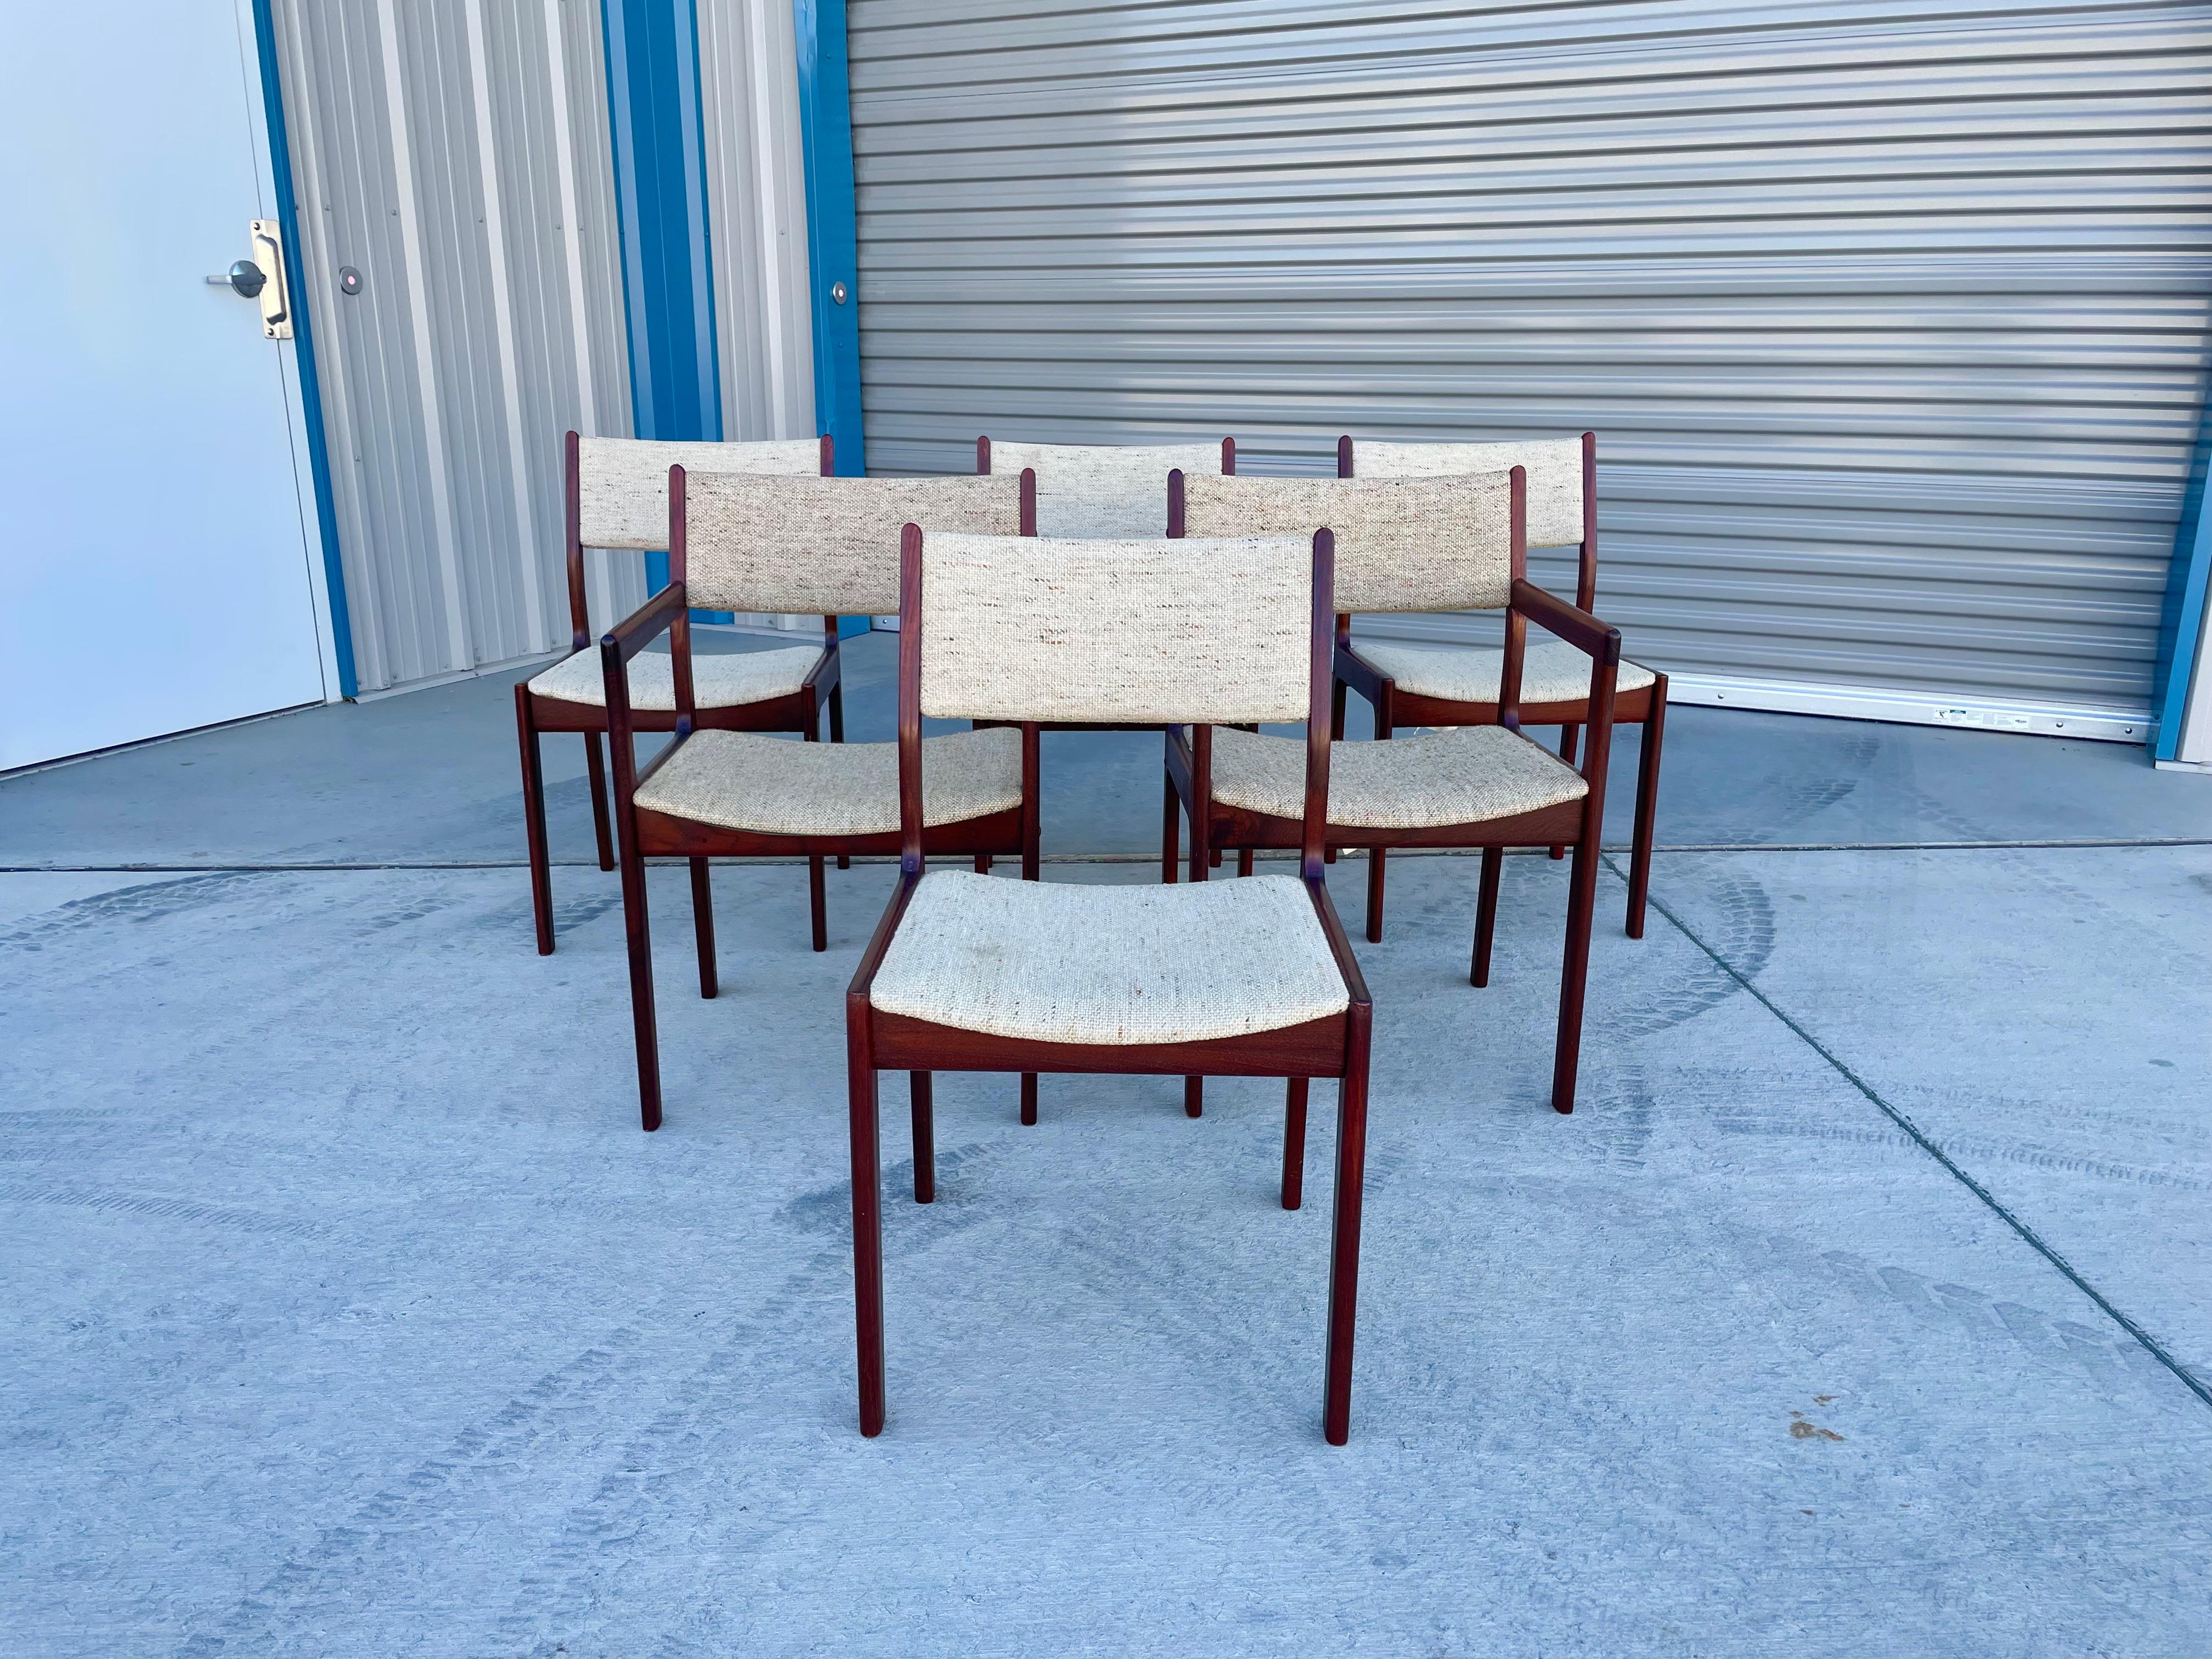 D'incroyables chaises de salle à manger qui ont été conçues et fabriquées au Danemark dans les années 1960. Les chaises sont fabriquées en bois de teck de haute qualité et présentent un aspect raffiné et élégant qui s'intégrerait parfaitement dans